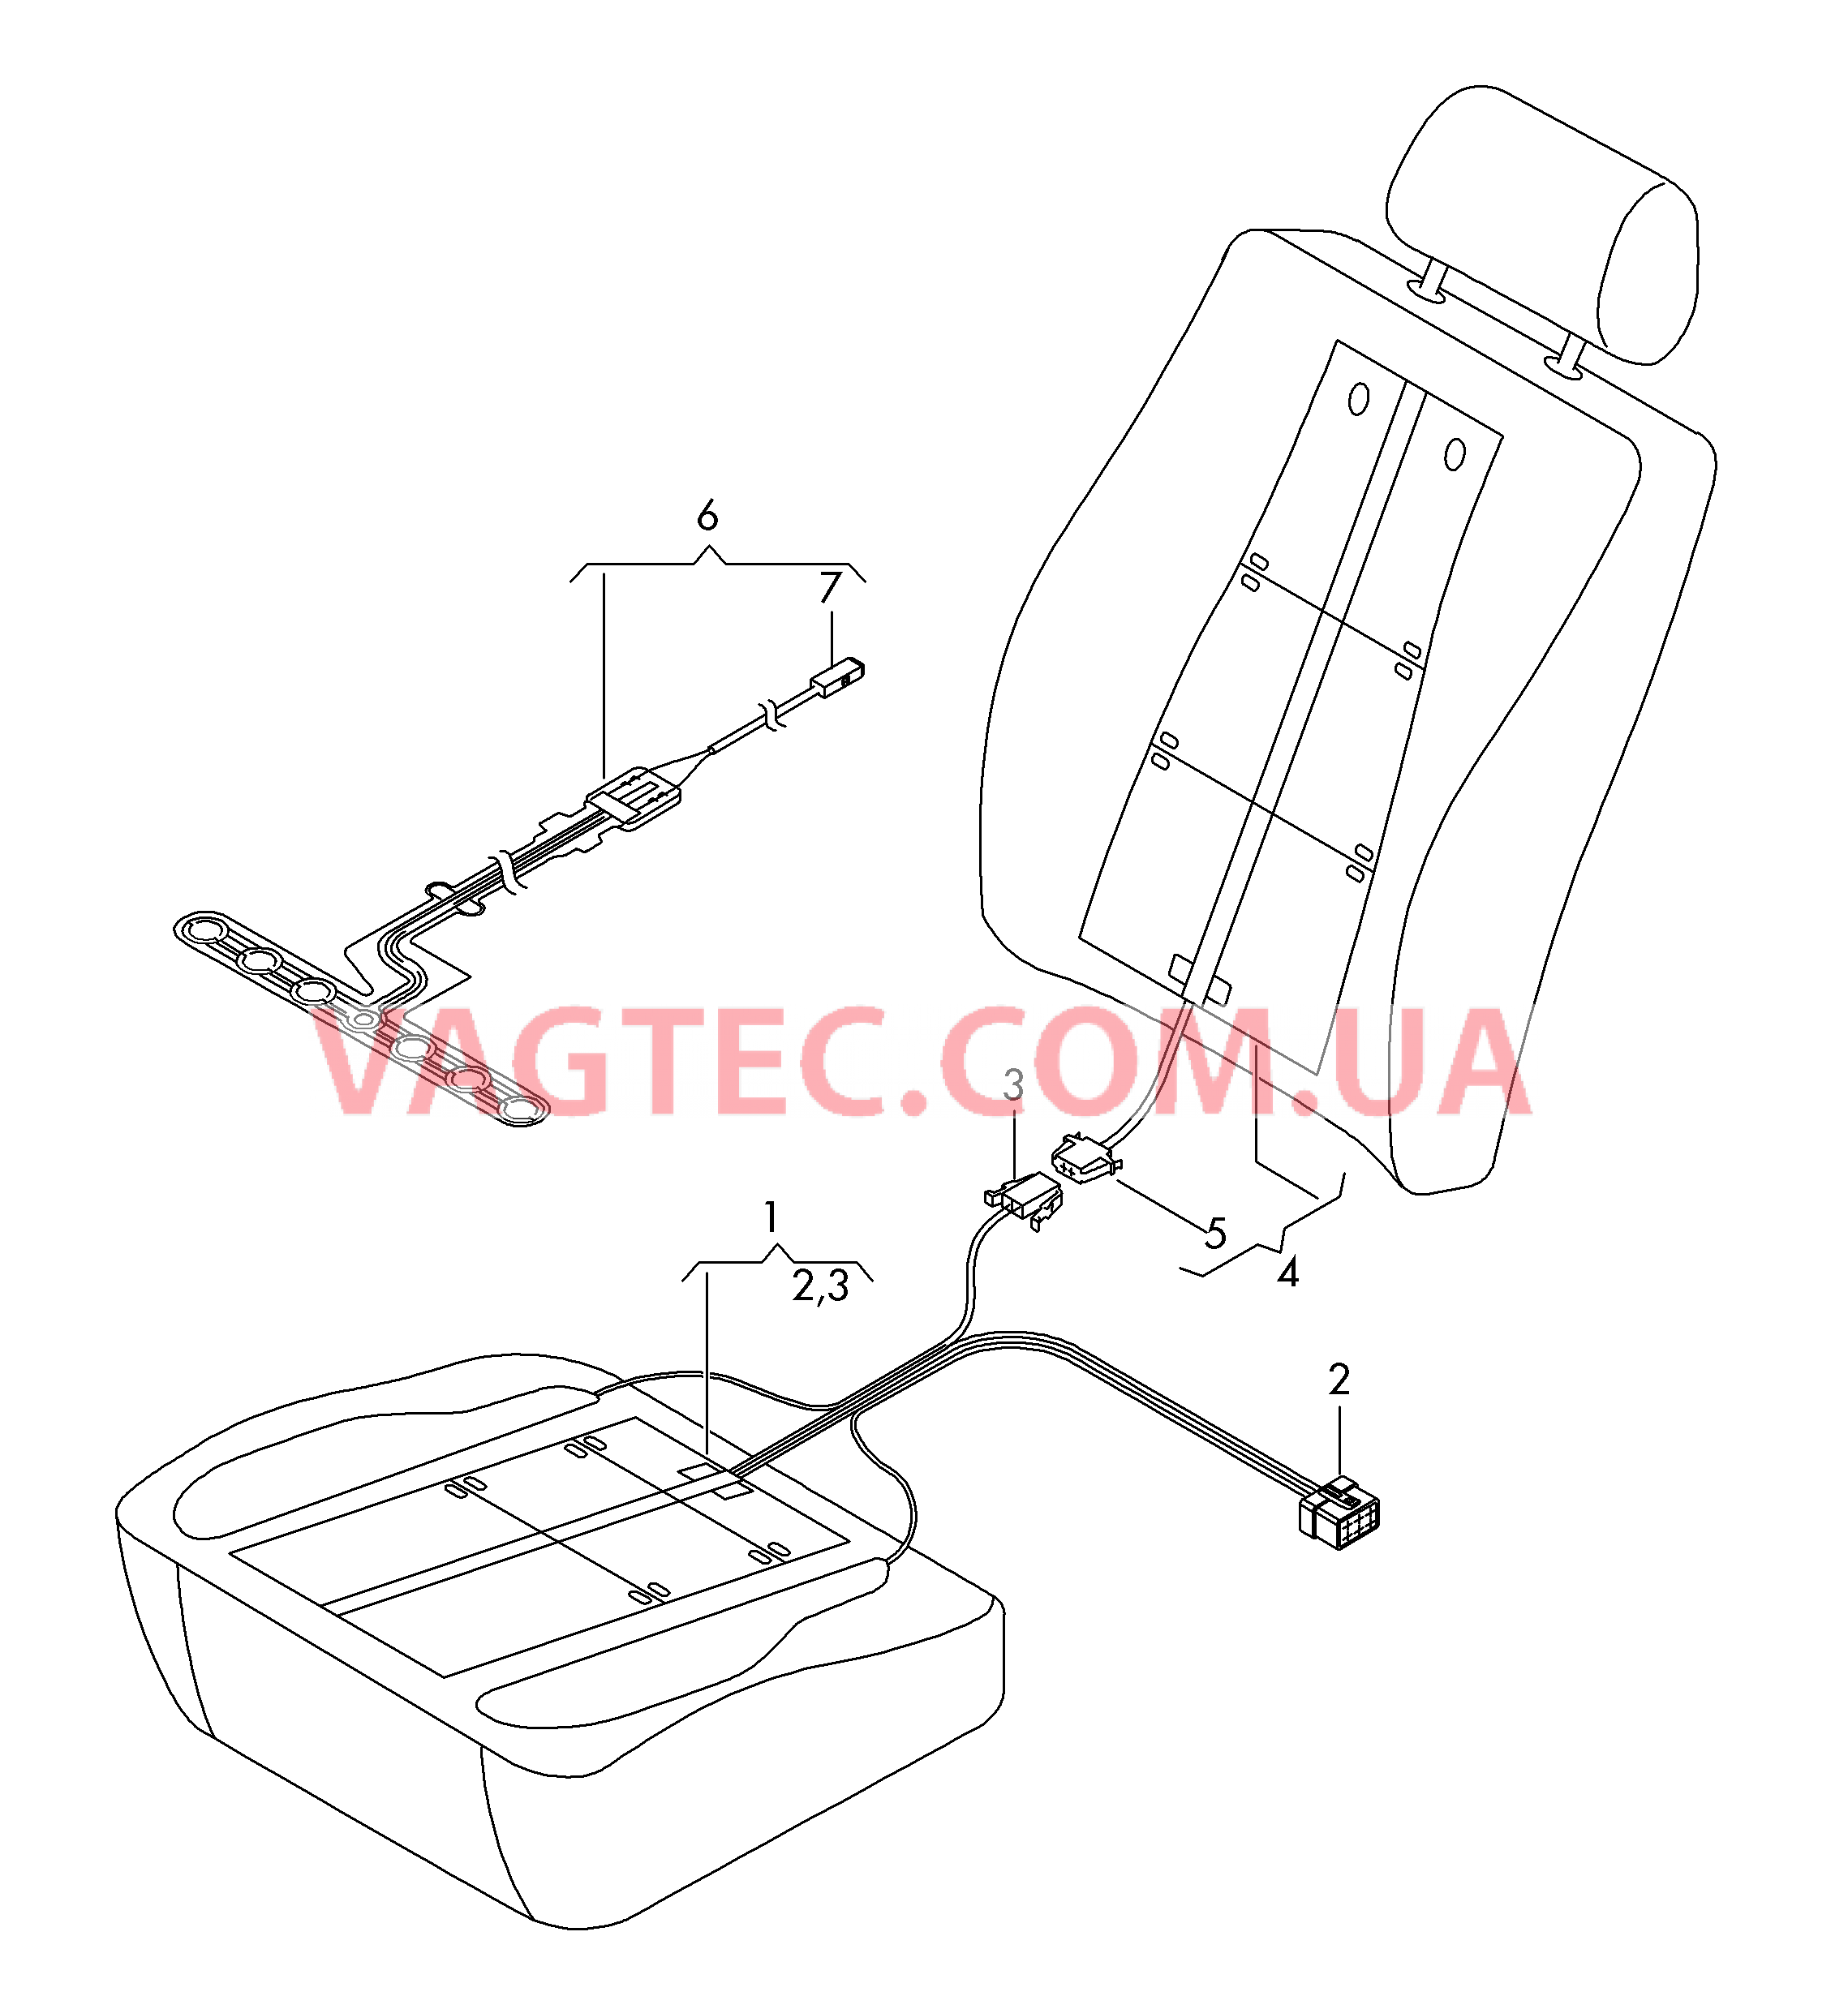 Нагревательный элемент спинки и подушки сиденья  Вставка распознавания занятости сиденья  для SEAT Leon 2015